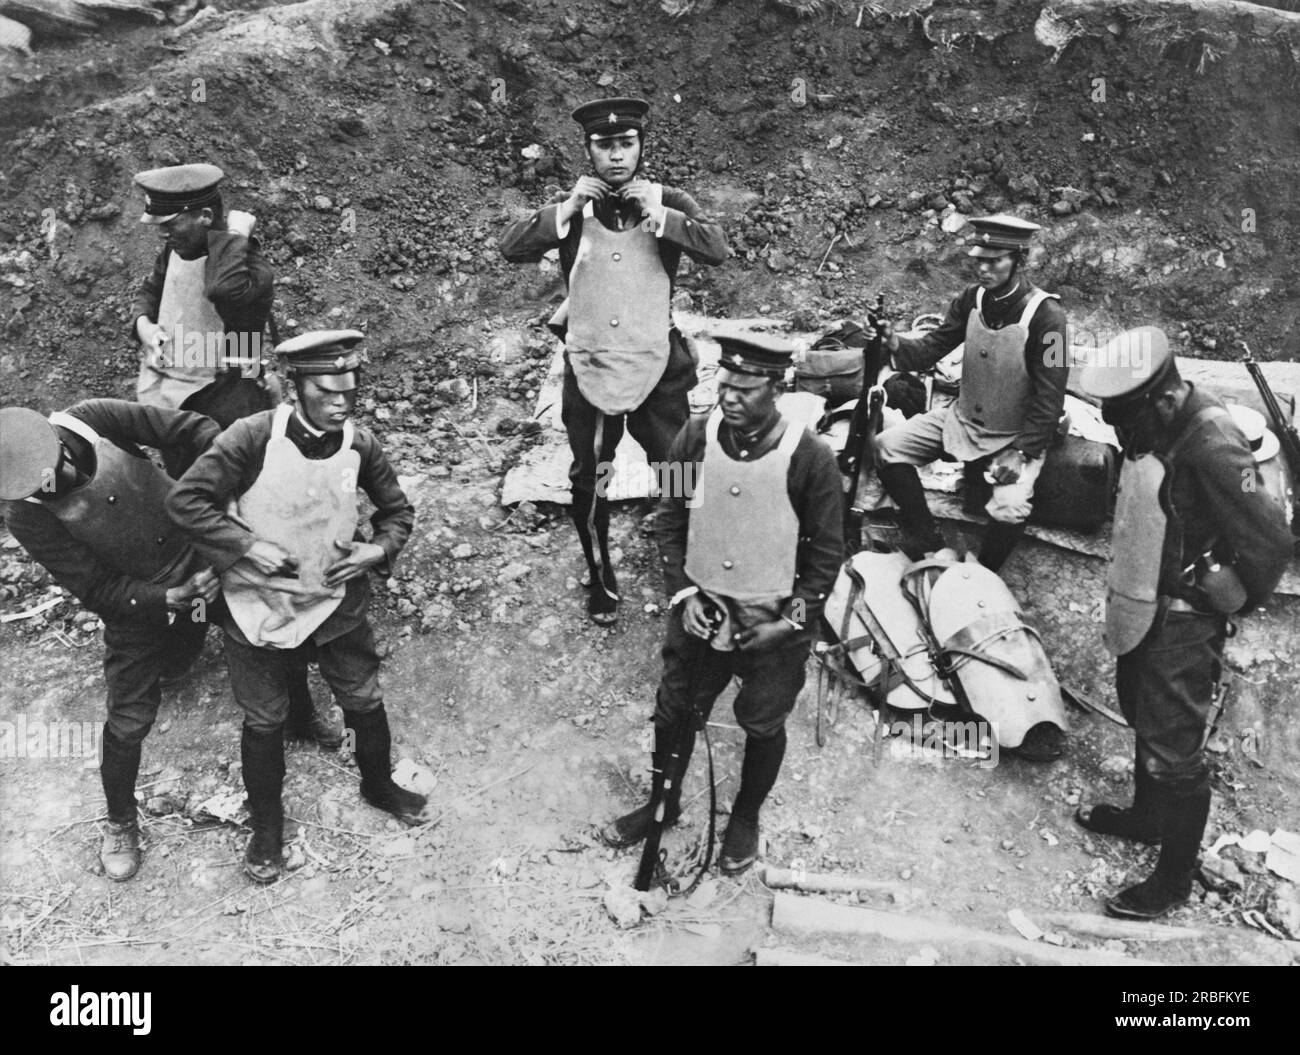 Pingvang, Korea: Am 21. Juli 1931 legten japanische Gendarmen kugelsichere Westen an, bevor sie zur Rettung chinesischer Ladenbesitzer gingen, die von Koreanern ins Visier genommen wurden, die durch Berichte aus der Mandschurei verärgert waren, dass eine Reihe von Koreanern von einer chinesischen Mafia schwer geschlagen worden waren. Stockfoto